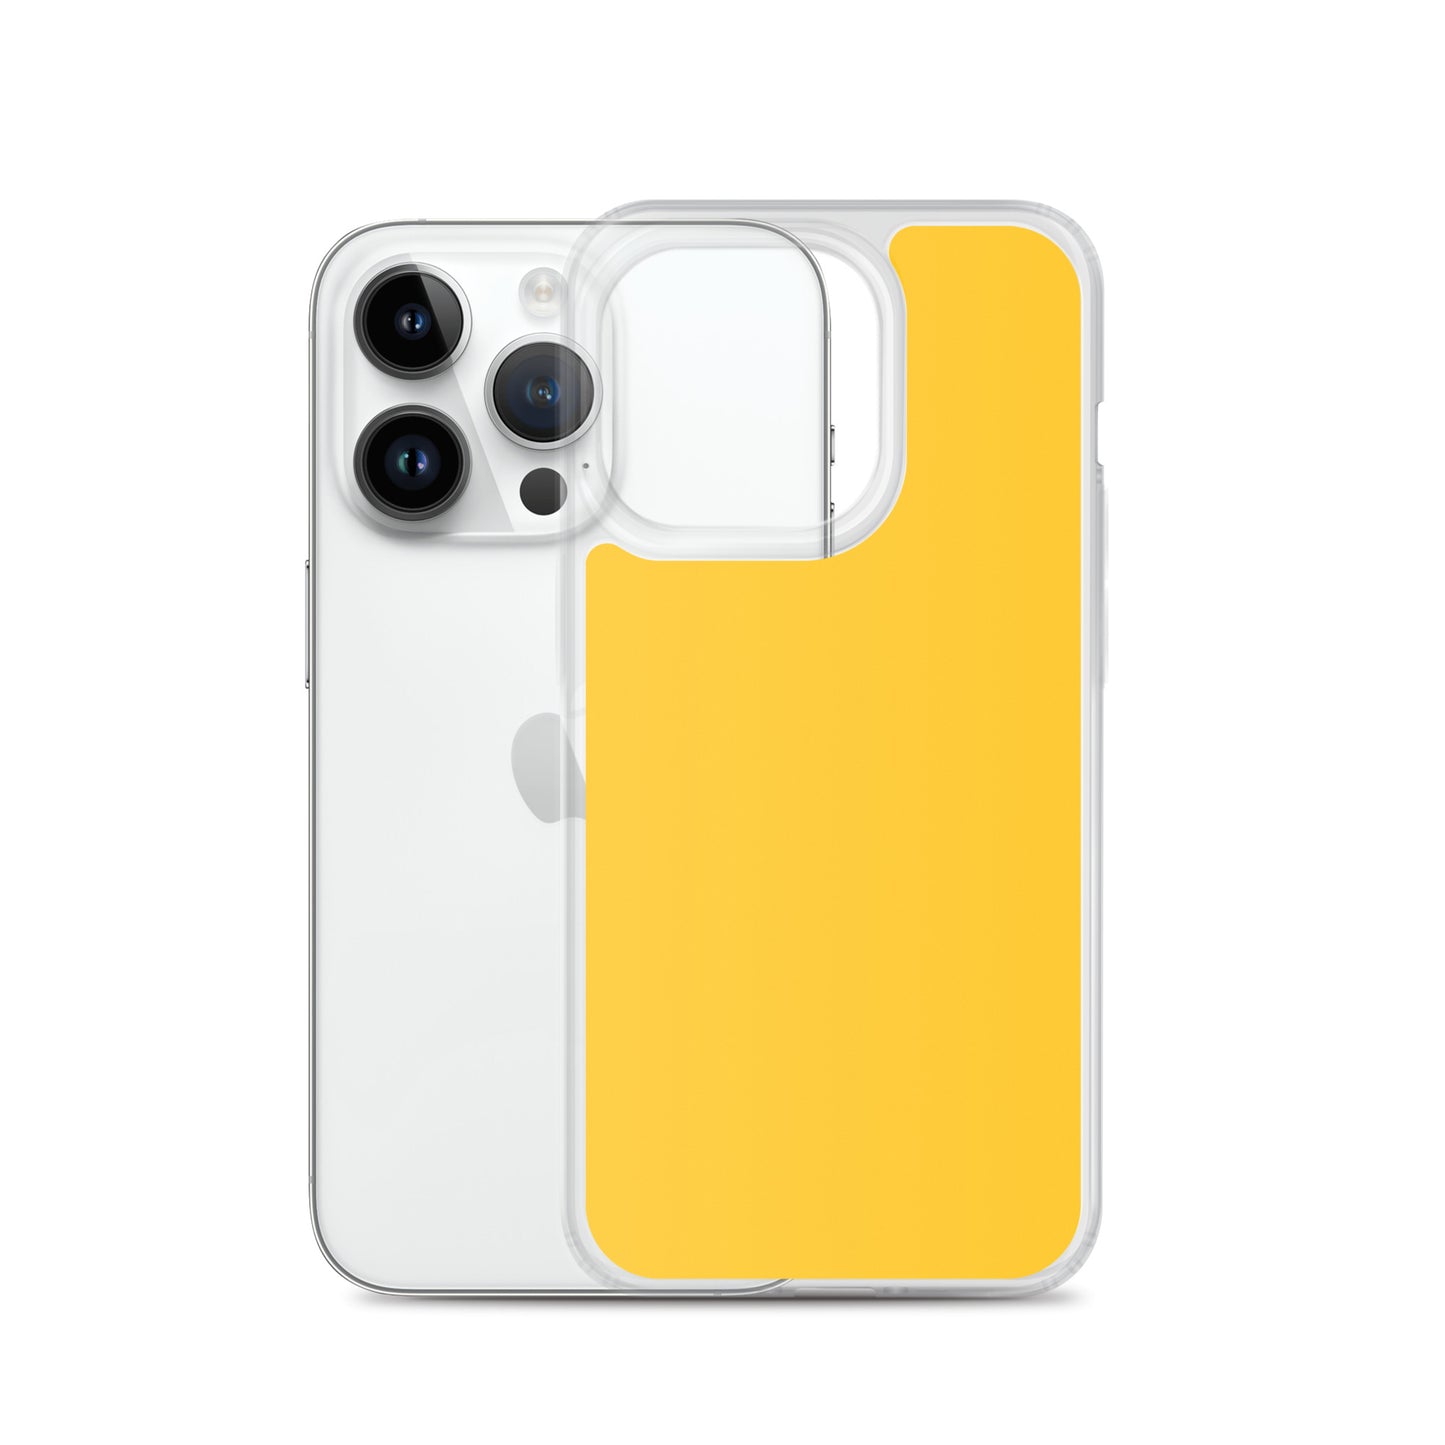 Coque iPhone jaune